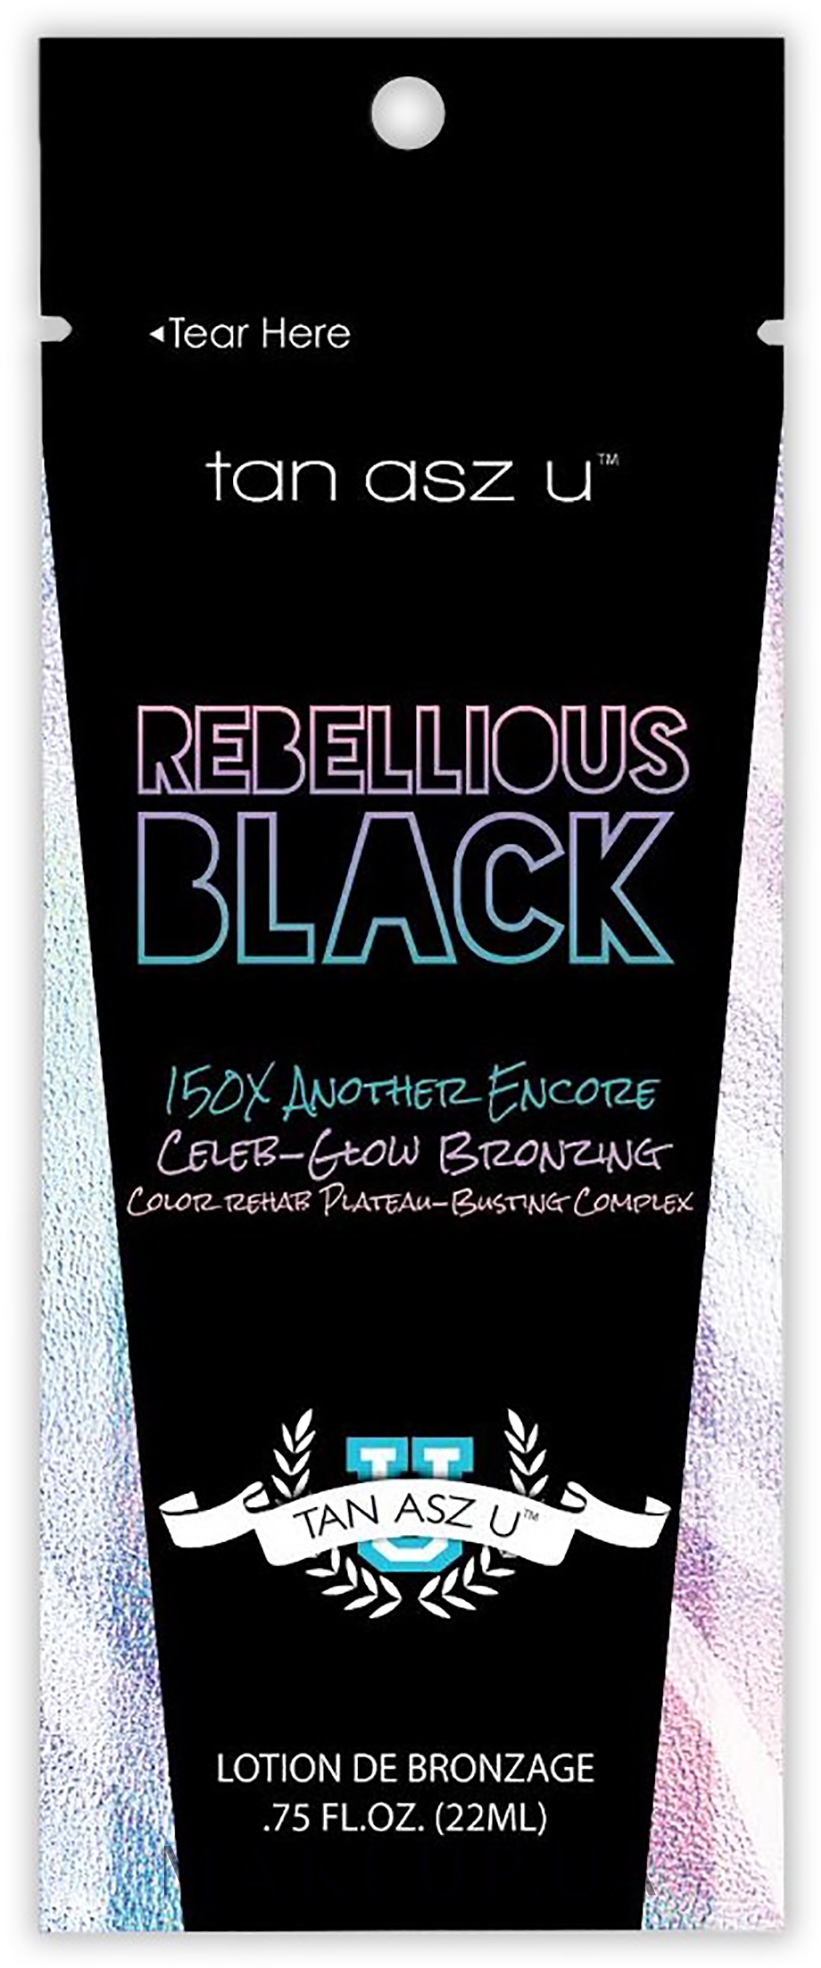 Крем для моментального бронзового гламурного загара в солярии с омолаживающим эффектом - Tan Asz U Rebellious Black 150X (пробник) — фото 22ml